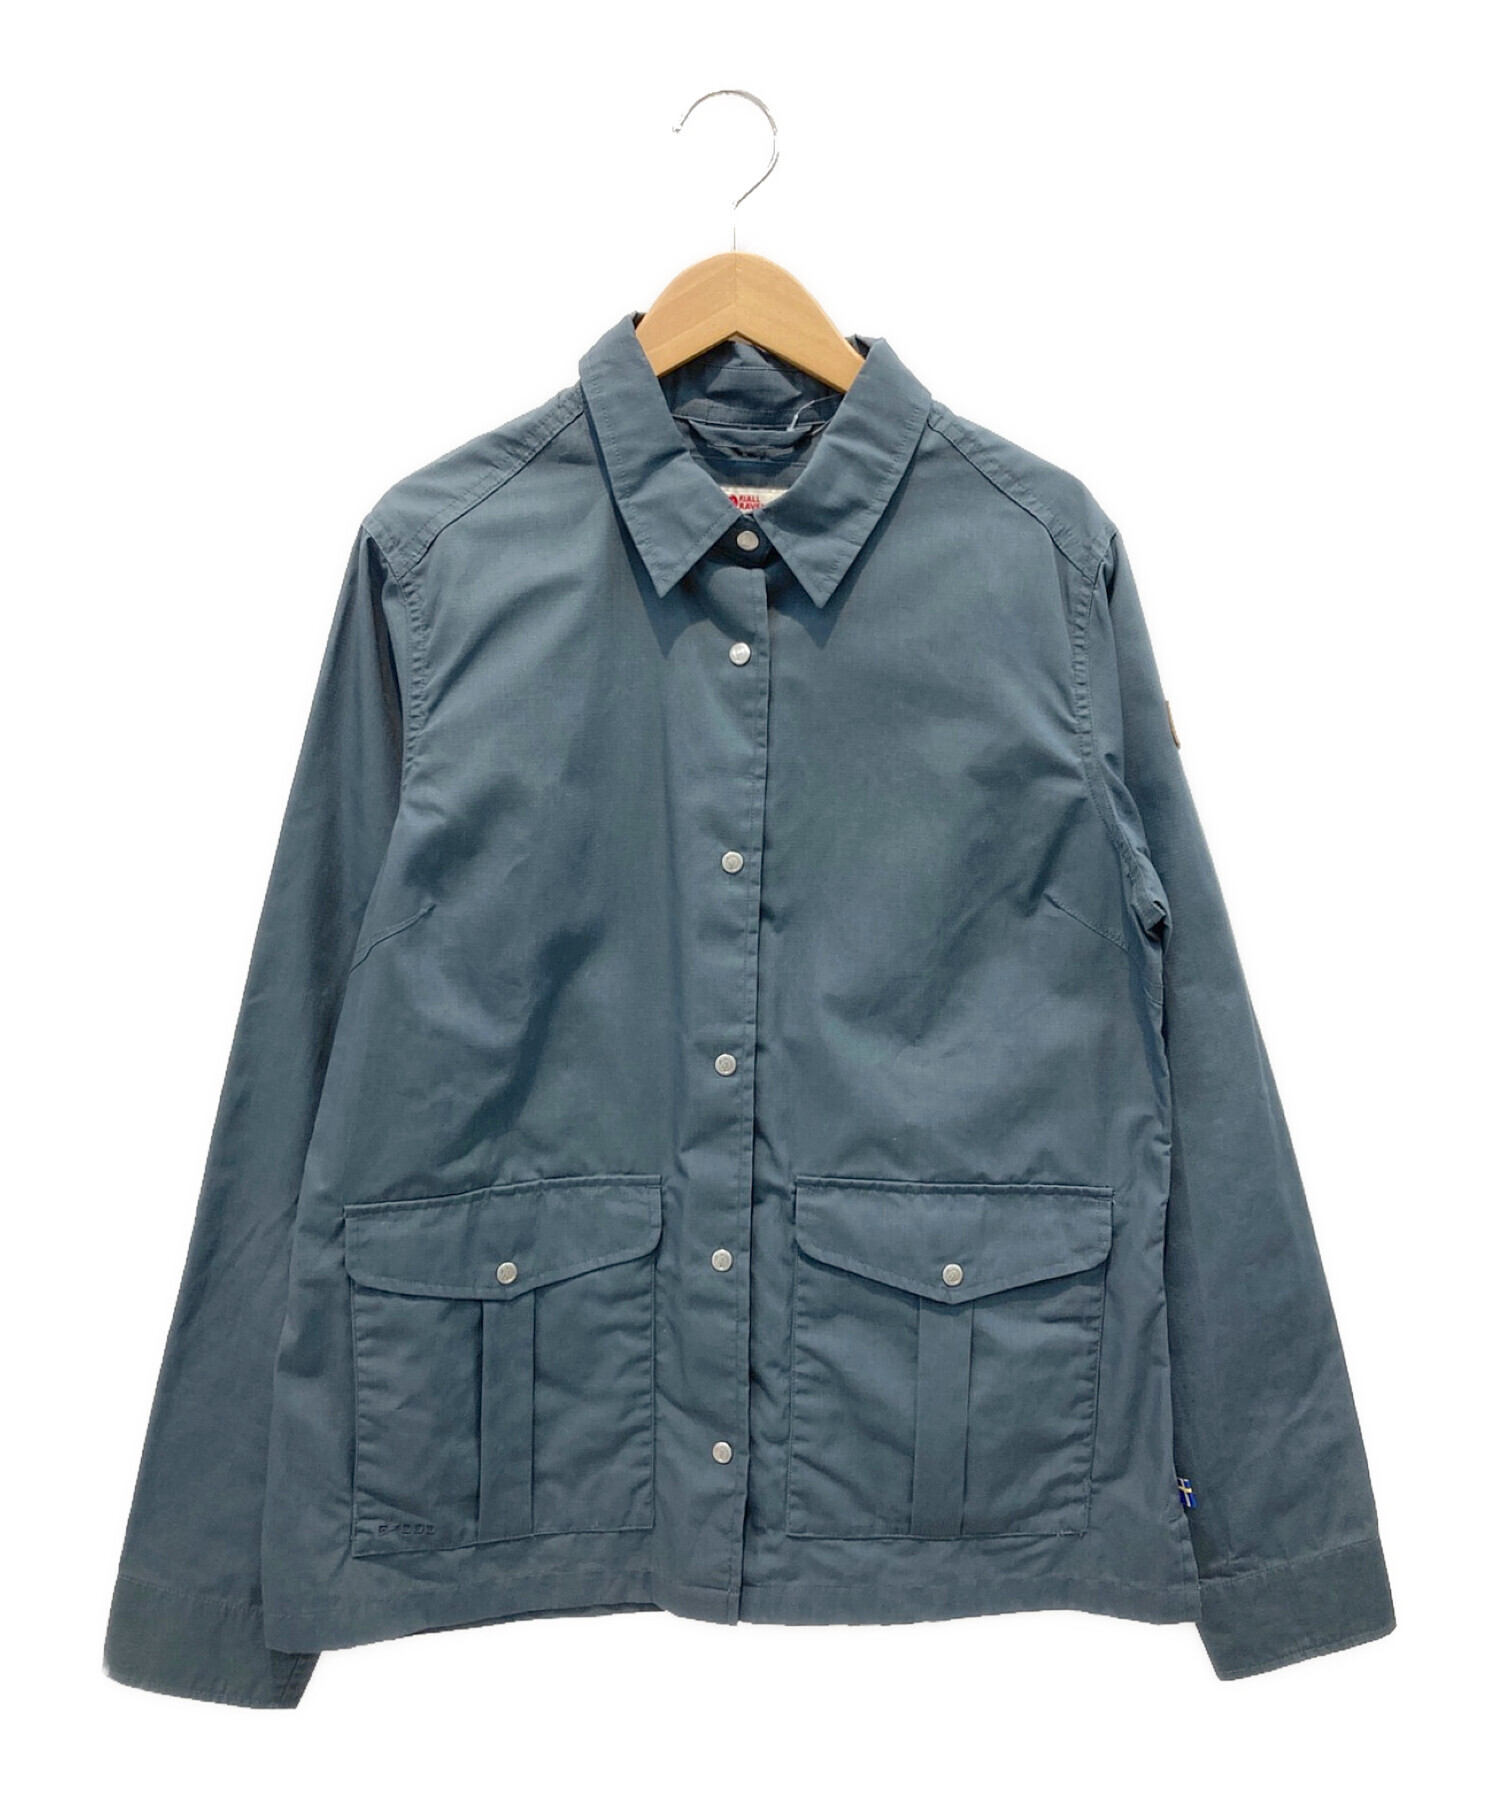 FJALLRAVEN (フェールラーベン) シャツジャケット グレー サイズ:M 未使用品